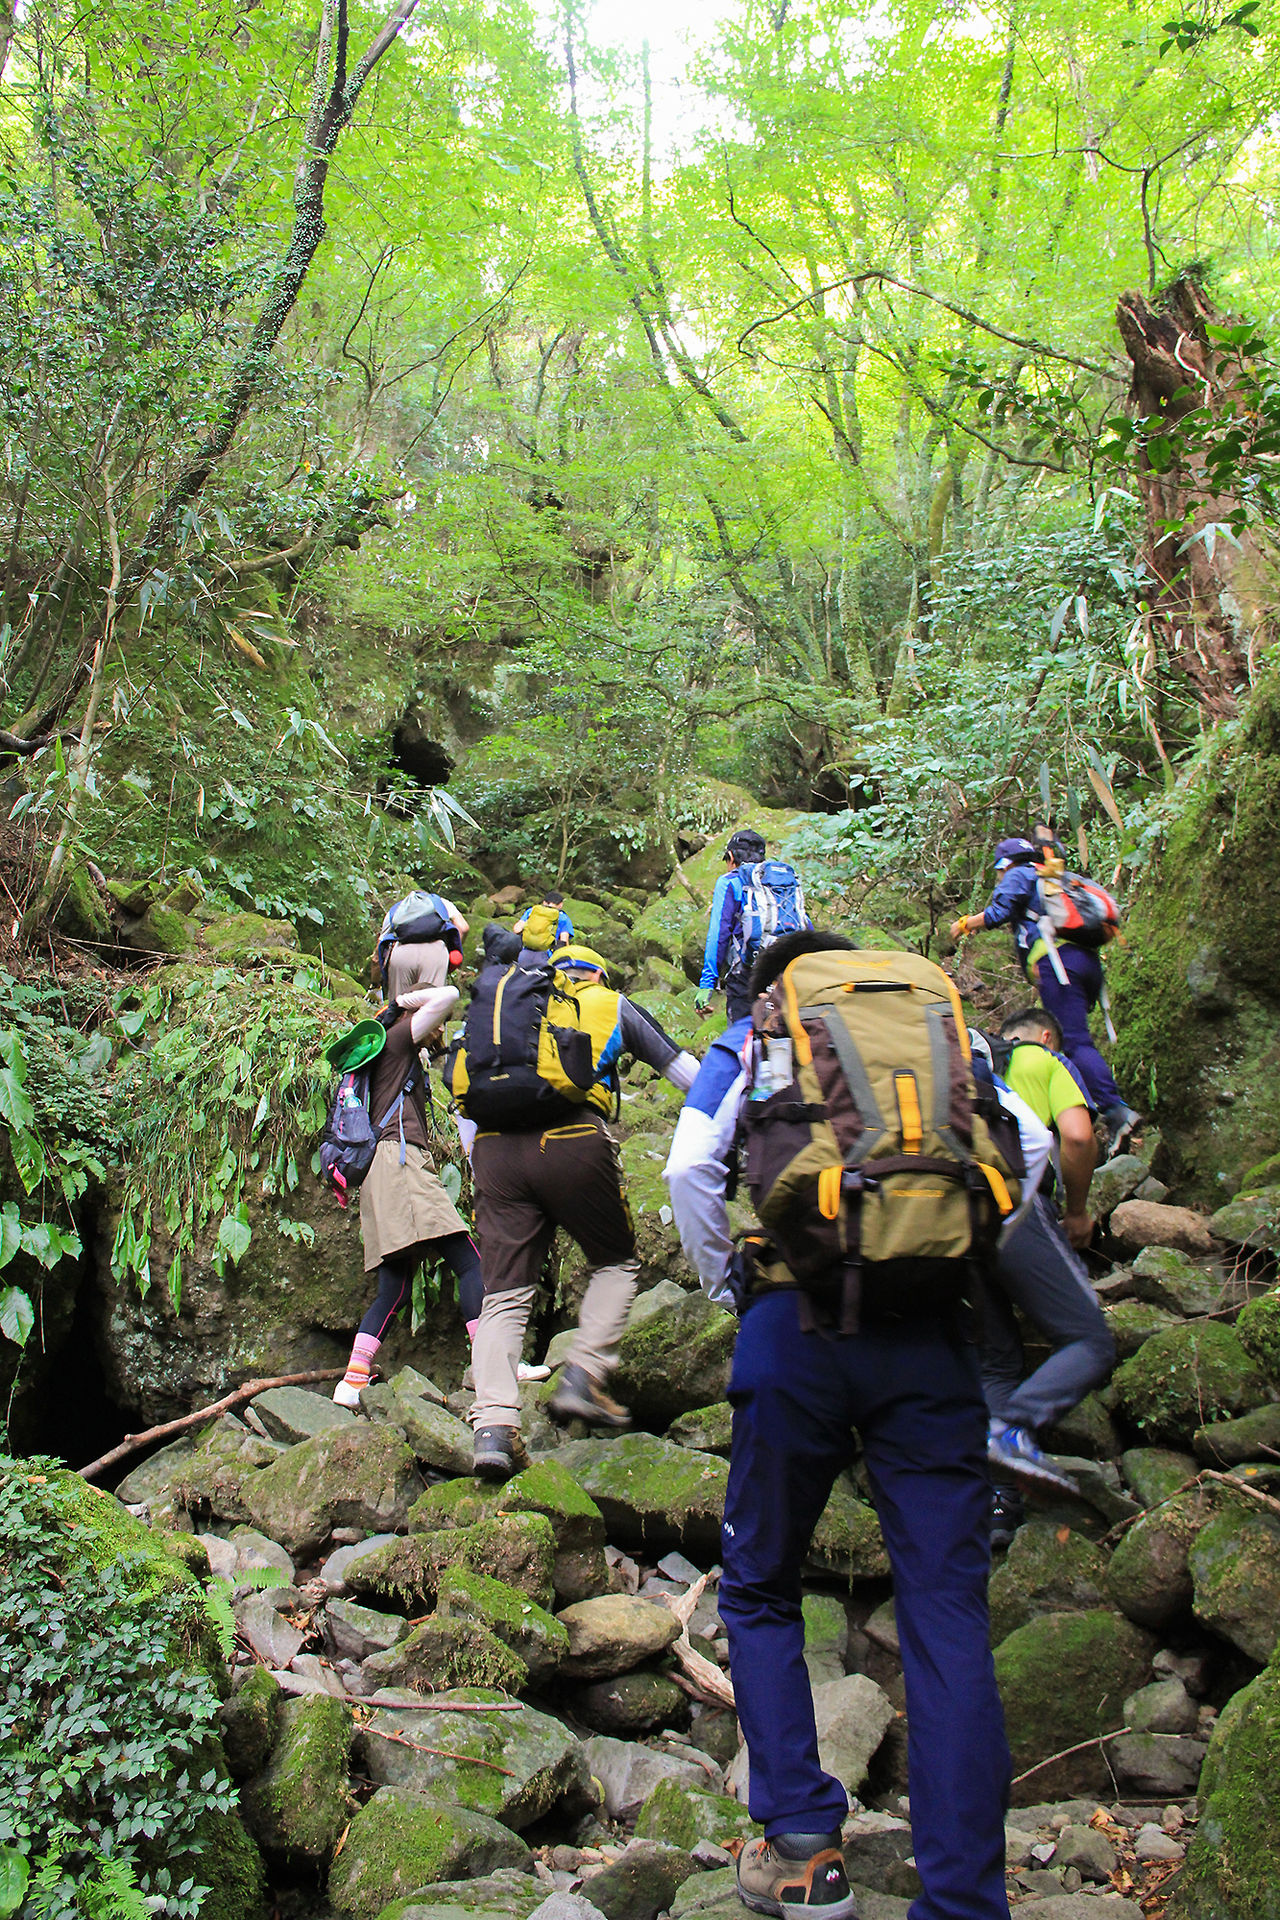 Les randonneurs entrent dans un mystérieux royaume de forêts vierges, dont le chemin est parsemé d’énormes roches couvertes de mousse.